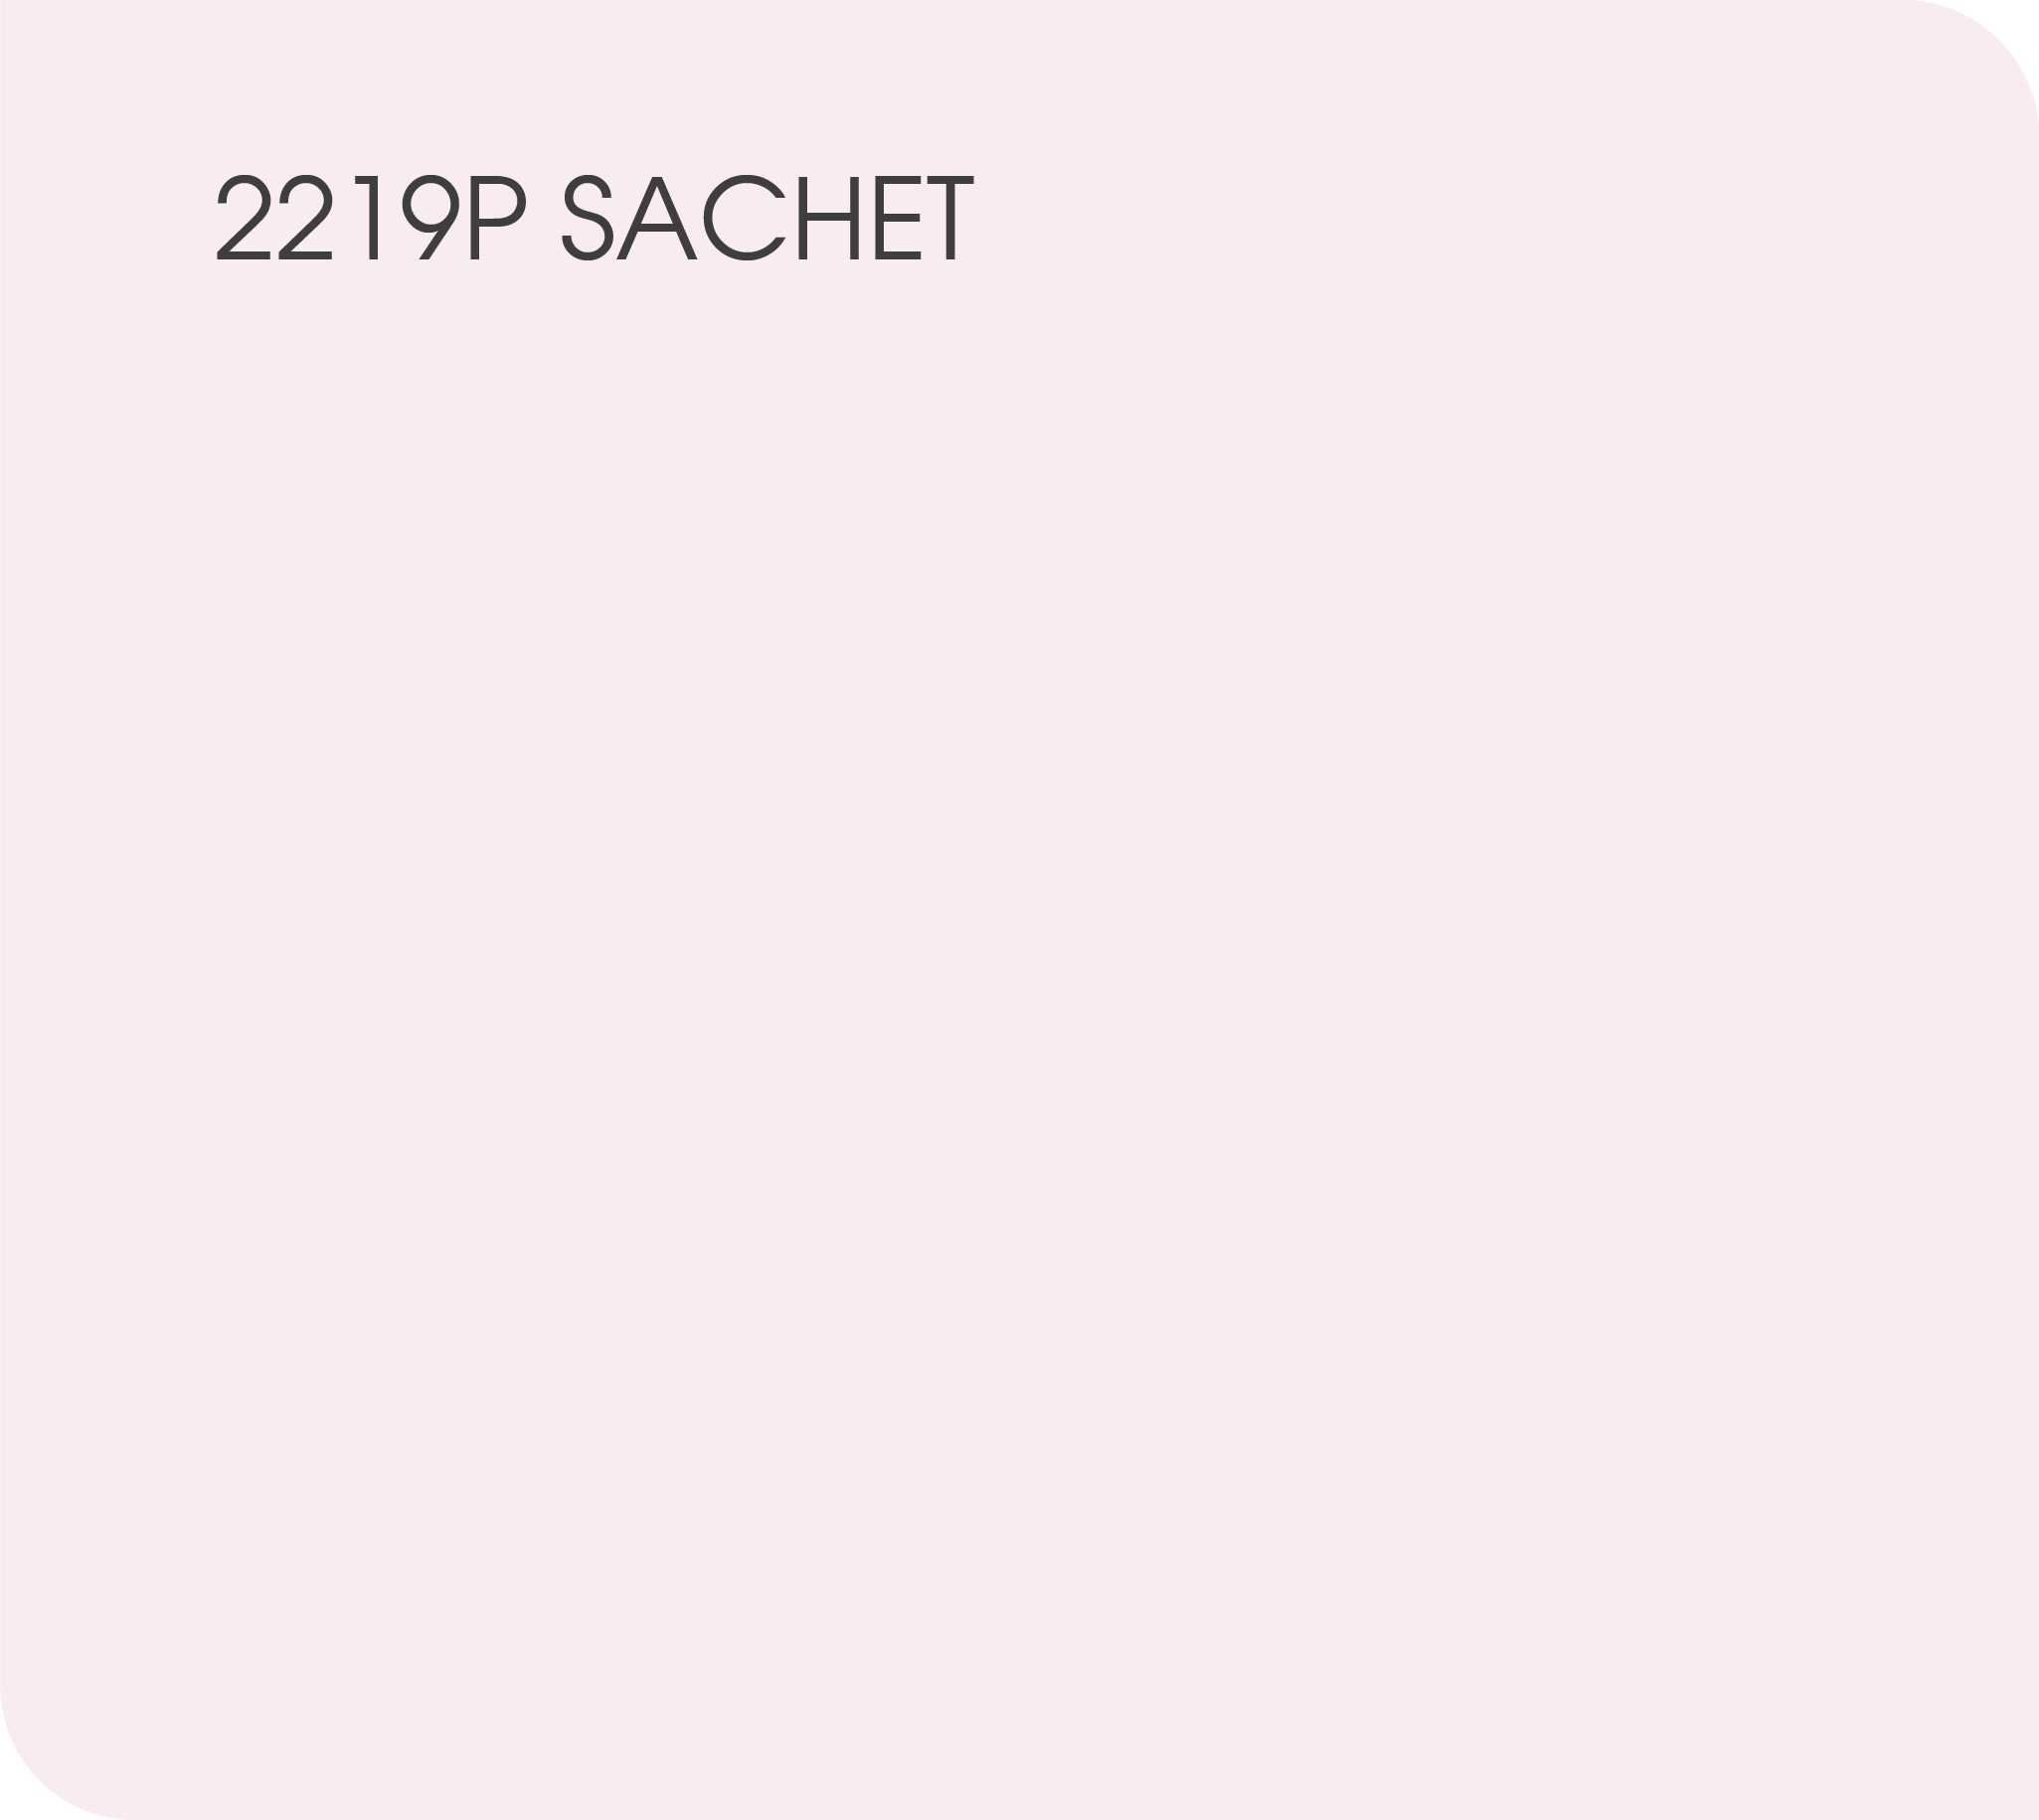 Sachet